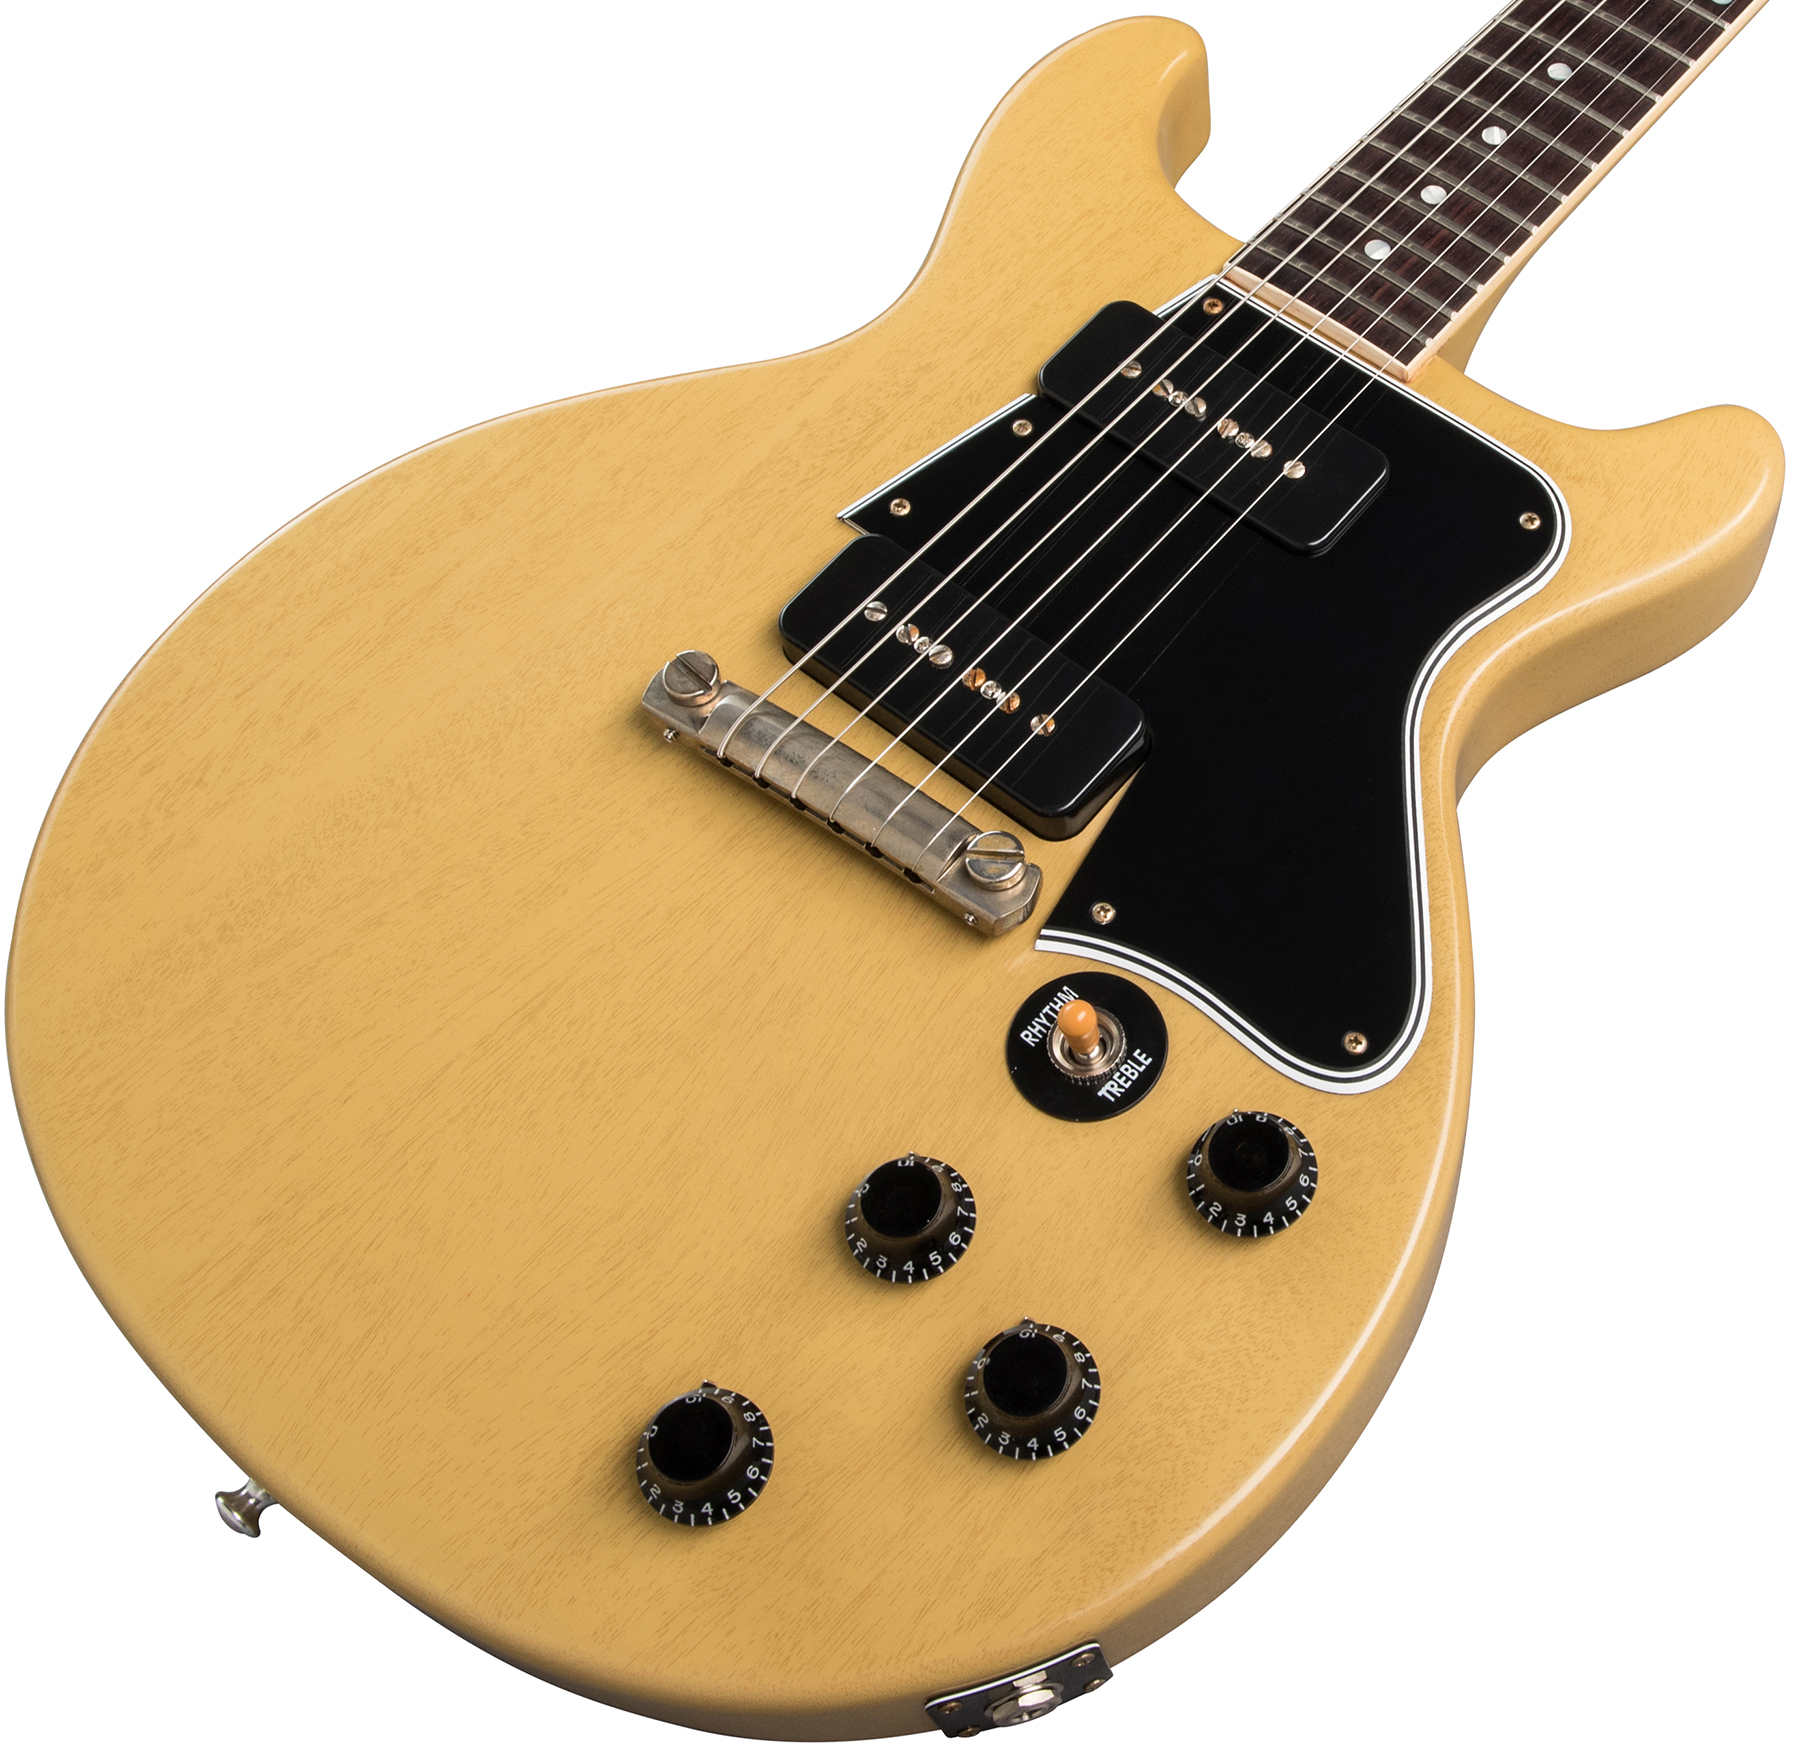 Gibson Custom Shop Les Paul Special 1960 Double Cut Reissue 2p90 Ht Rw - Vos Tv Yellow - Guitarra eléctrica de corte único. - Variation 3